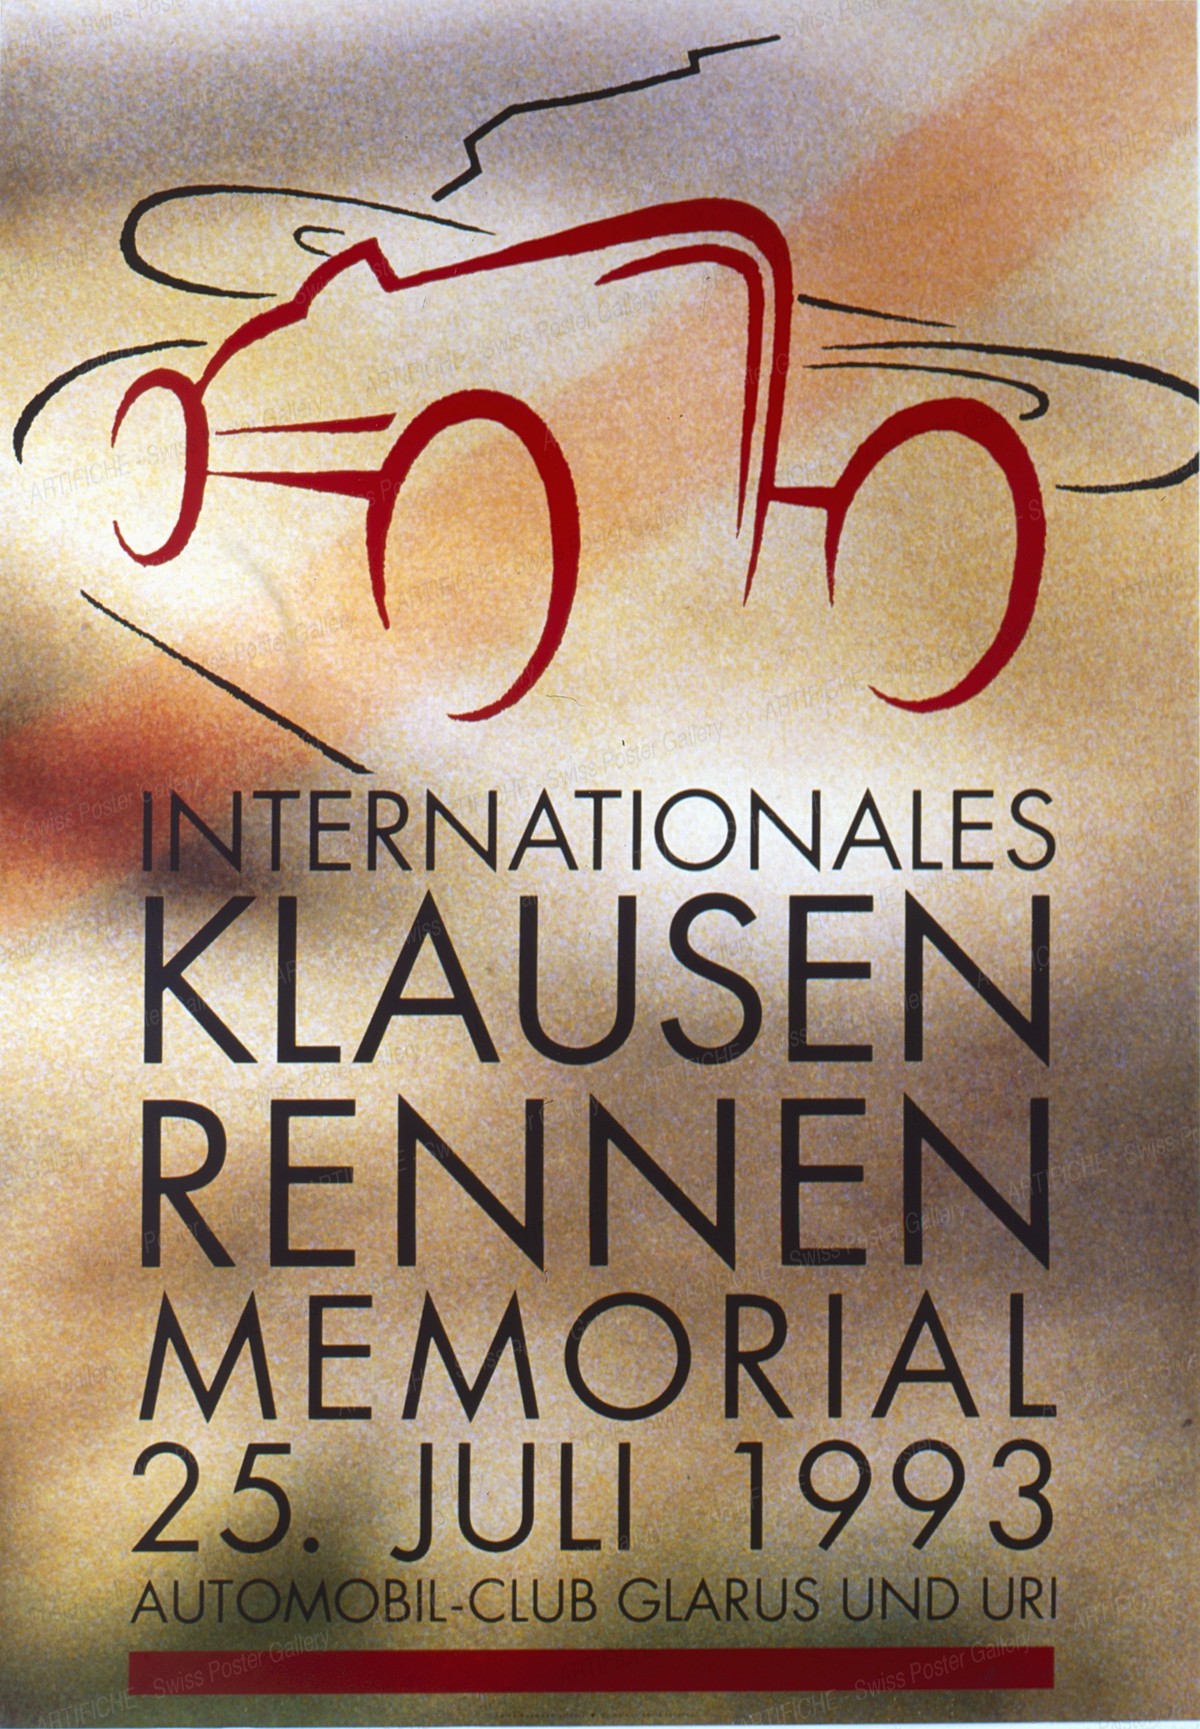 Memorial Klausen International Motor Car Race 1993, Heinz Baumann